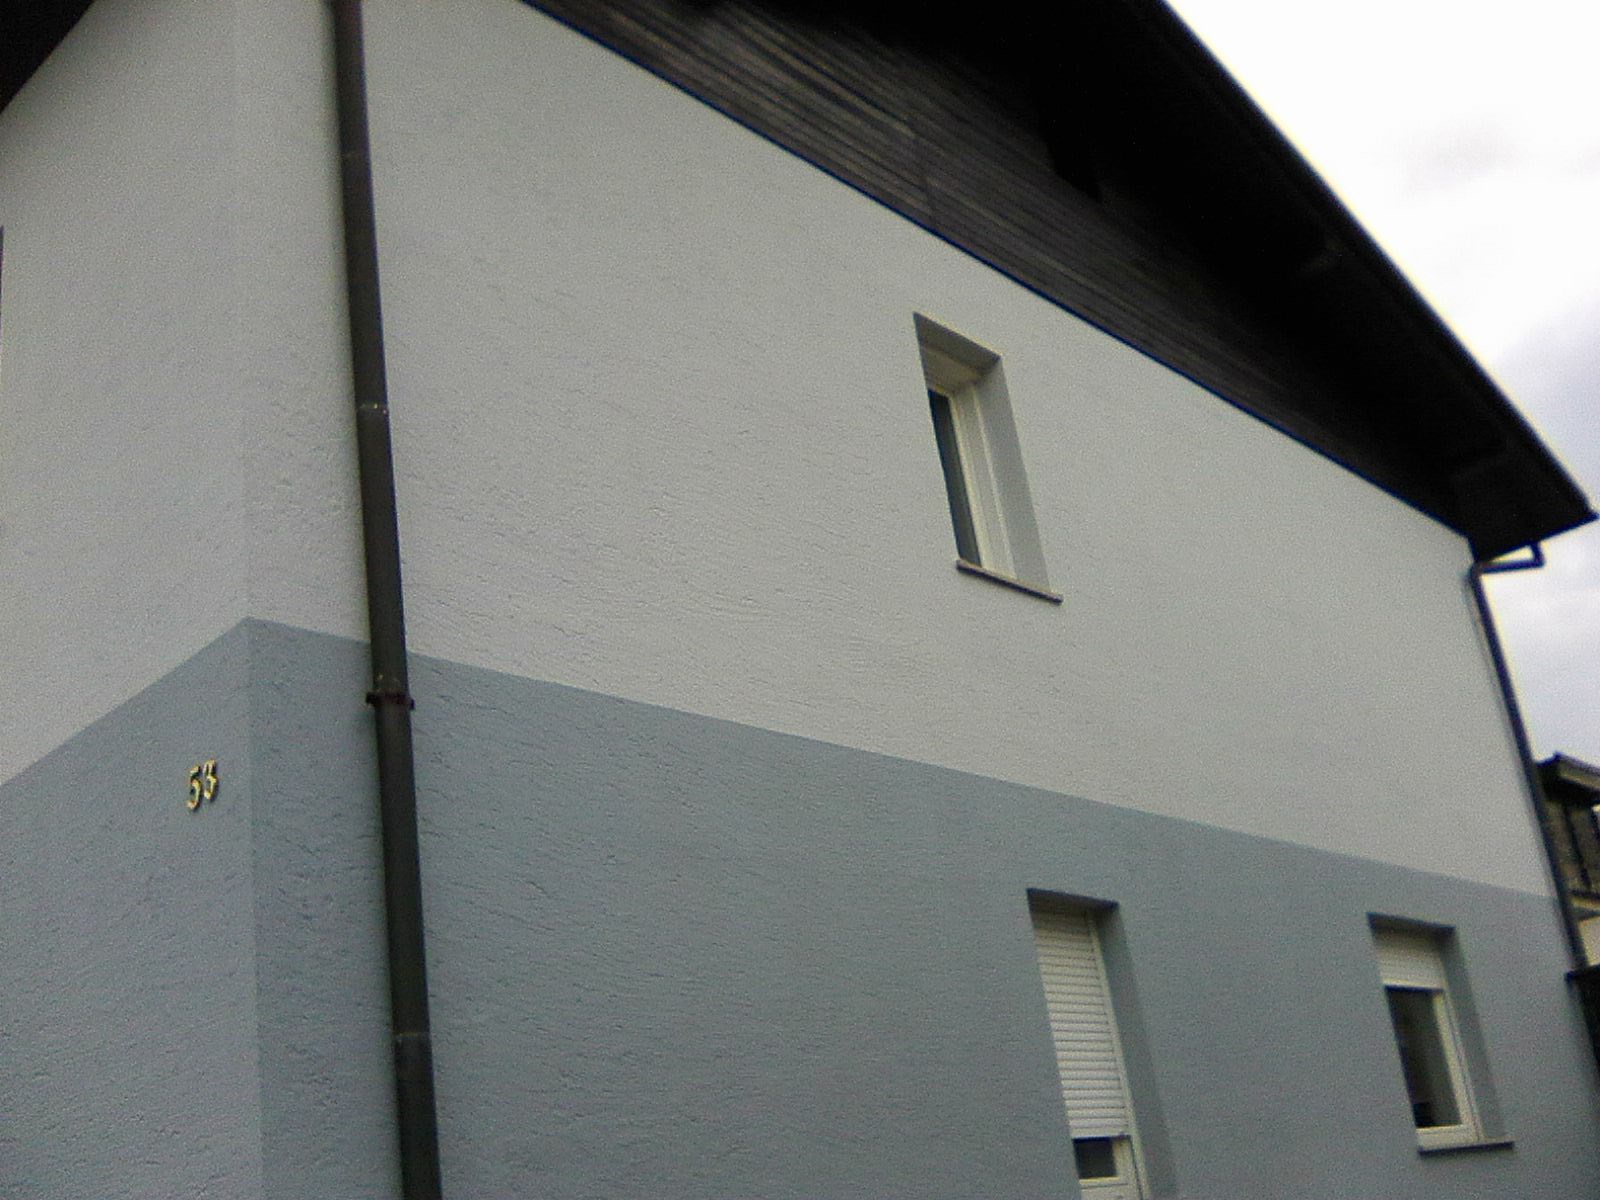 Fasada barvana v dveh odtenkih